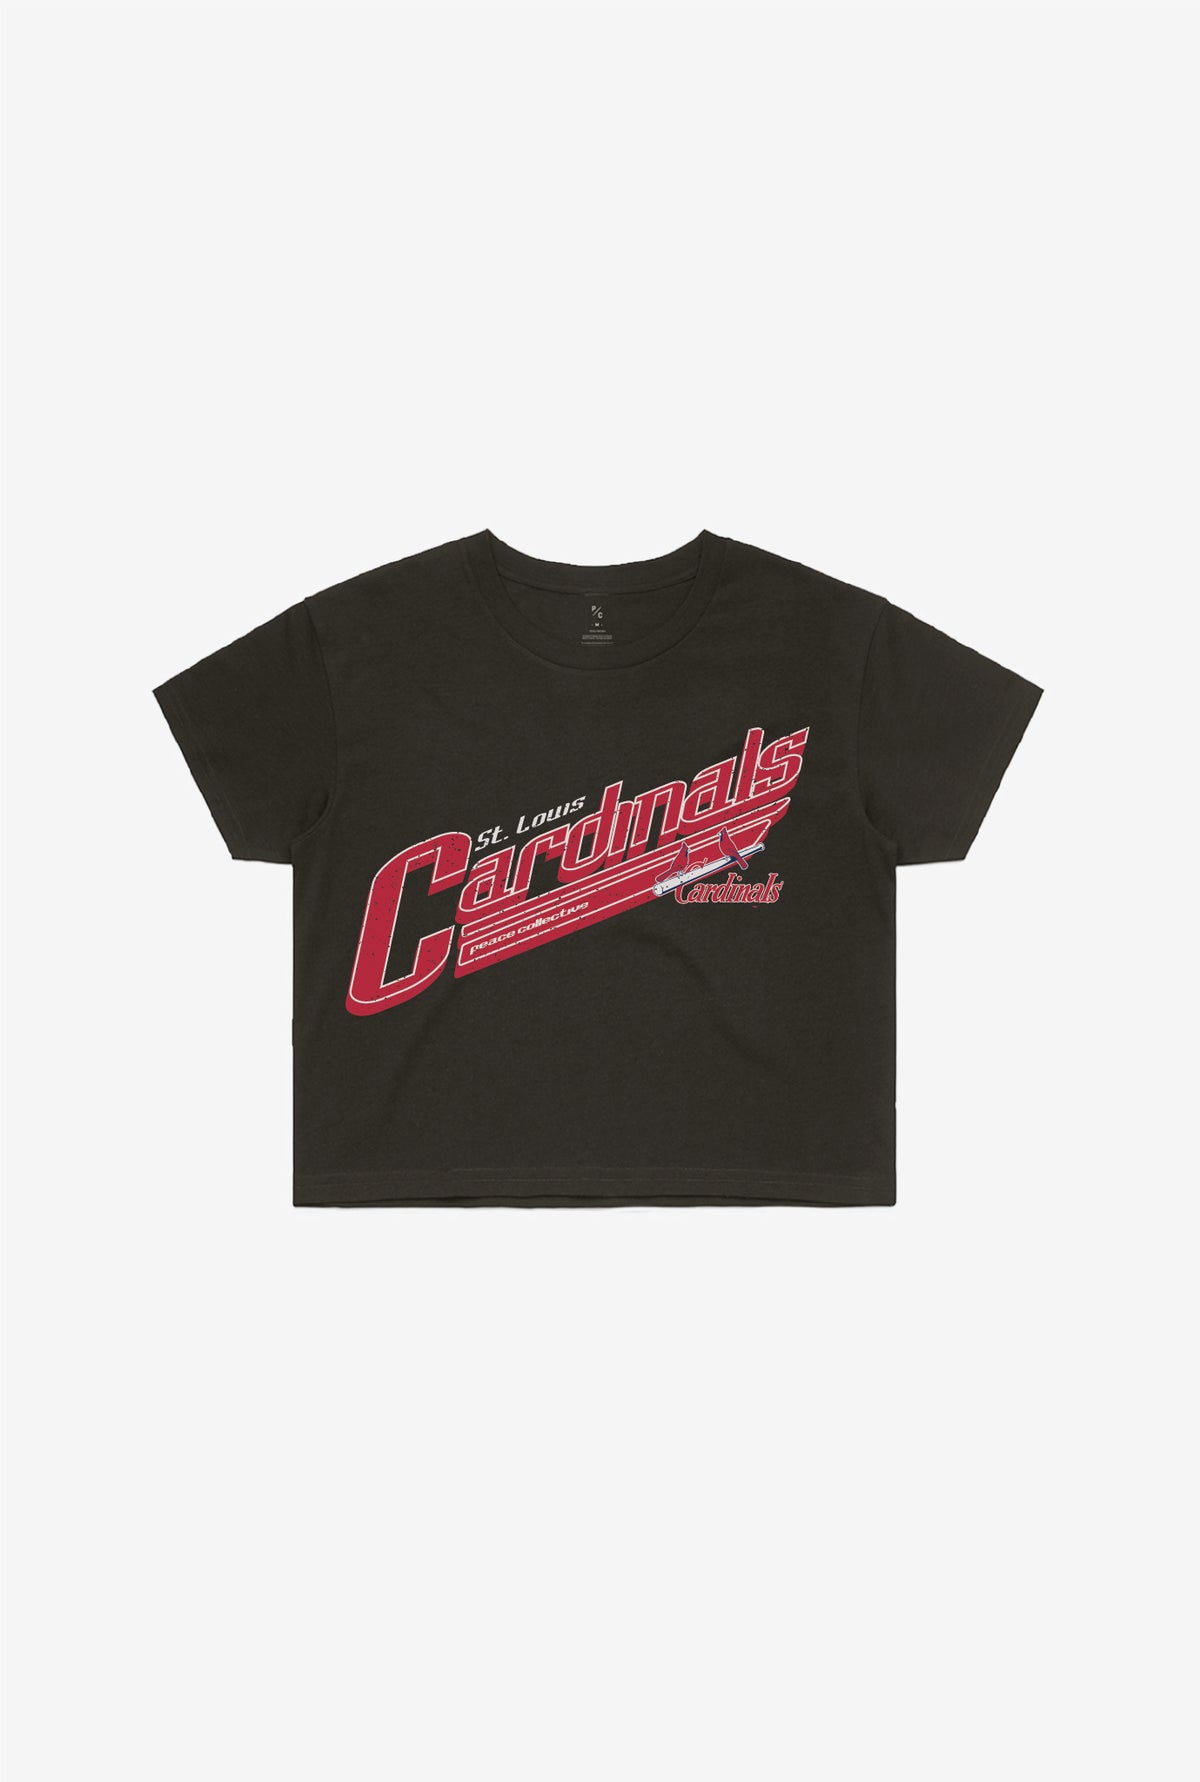 St. Louis Cardinals Vintage Cropped T-Shirt - Black